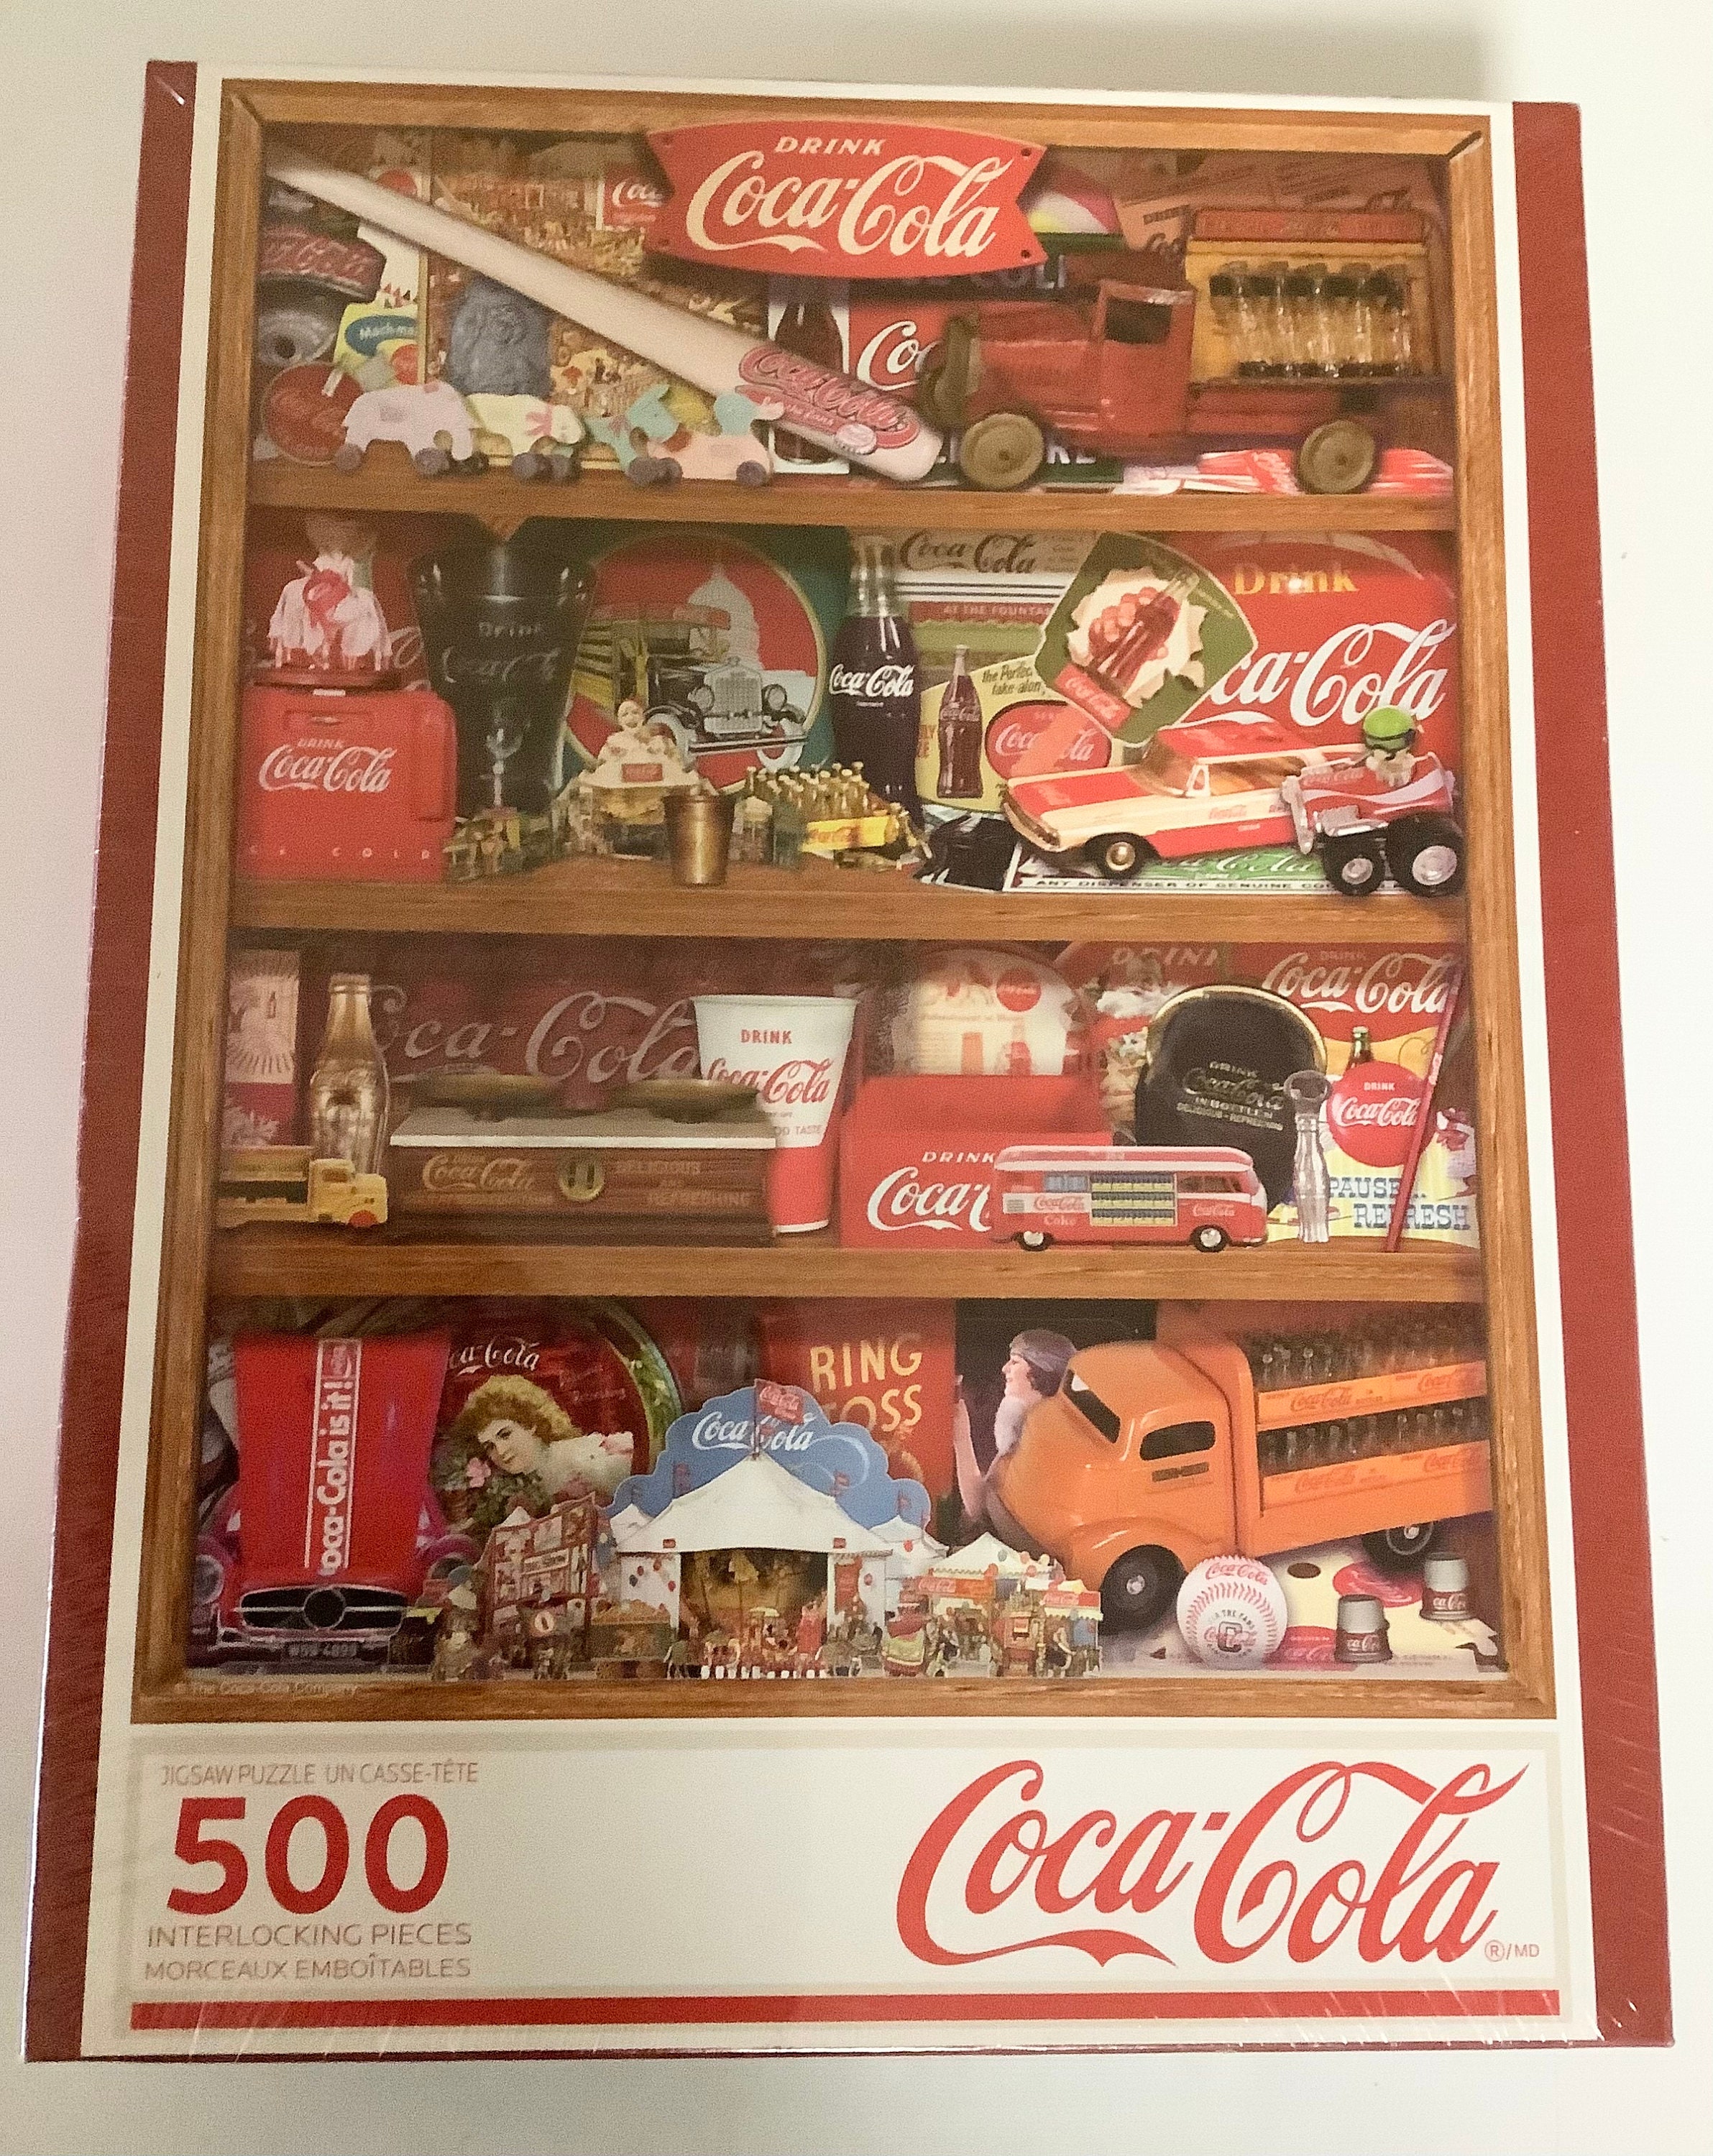 Springbok's 500 Piece Jigsaw Puzzle Coca-Cola A Collection 